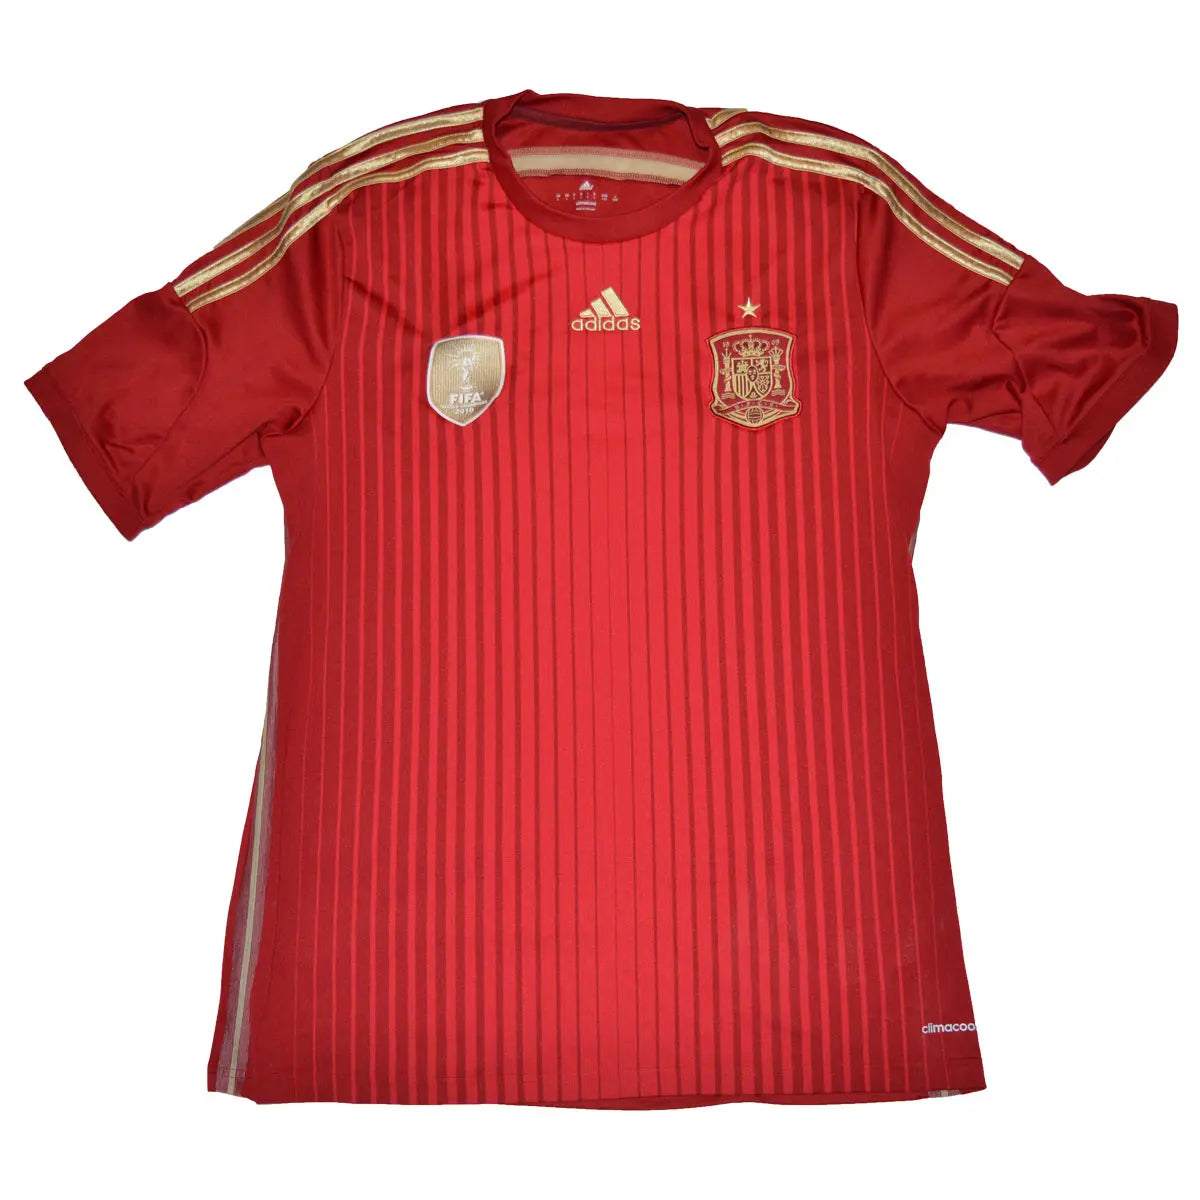 Maillot de foot rétro/vintage authentique rouge adidas de l'Espagne domicile 2014 